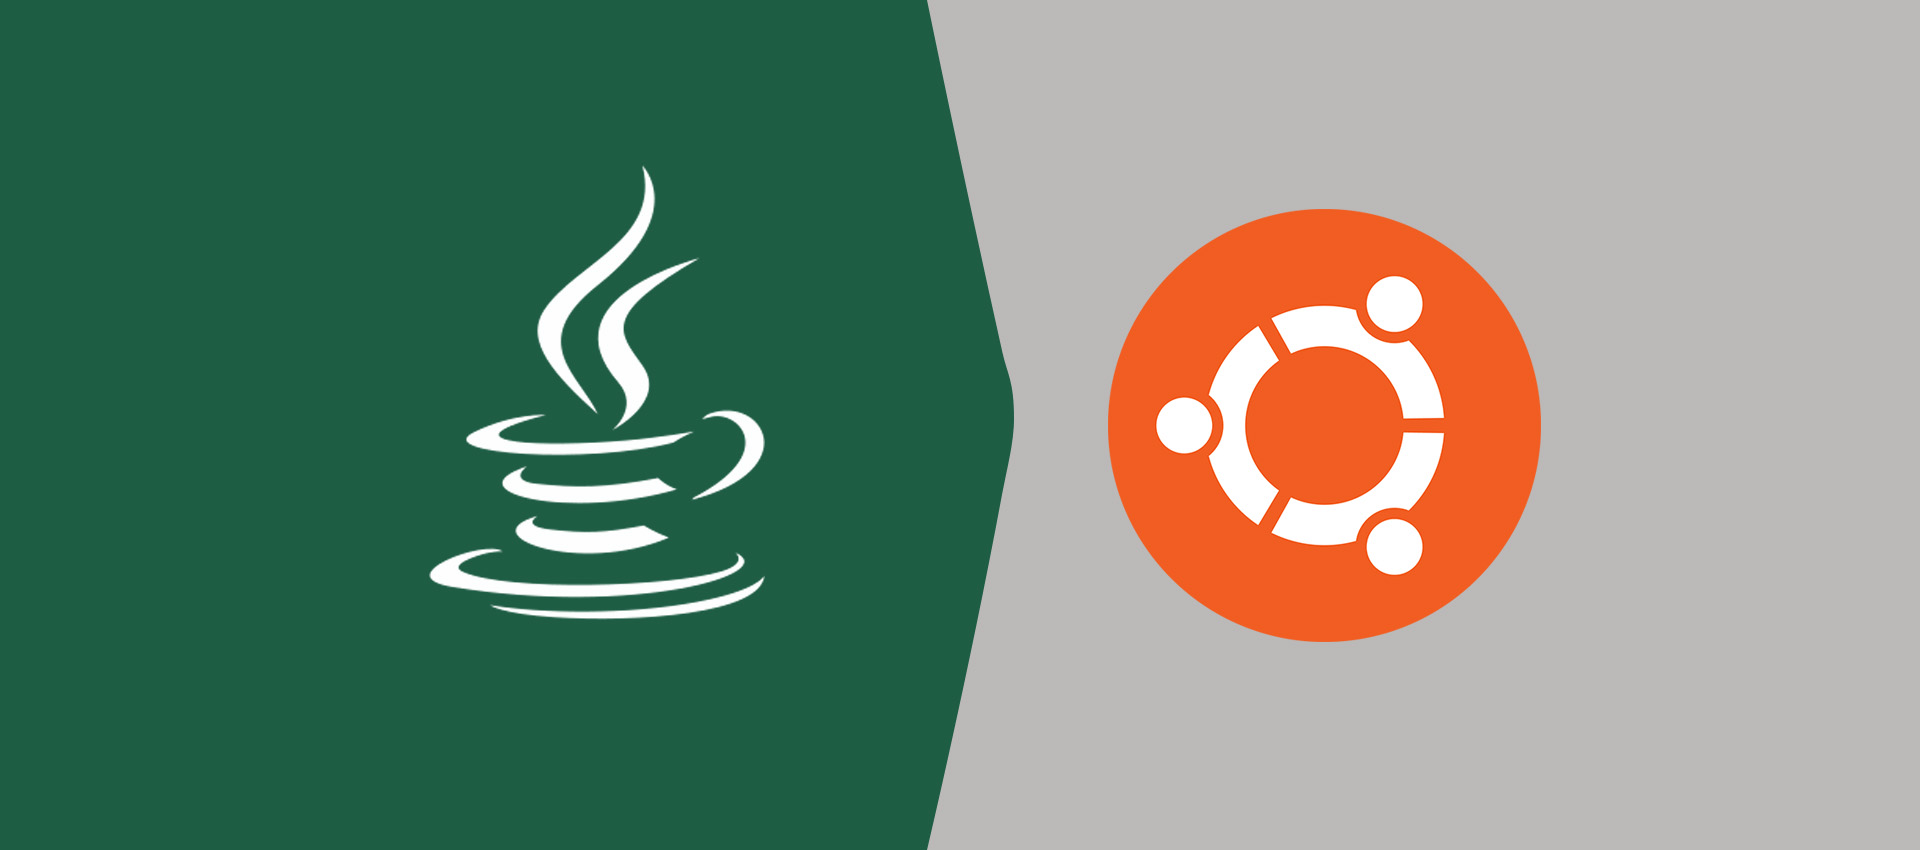 Install Java Ubuntu 18.04 Lts